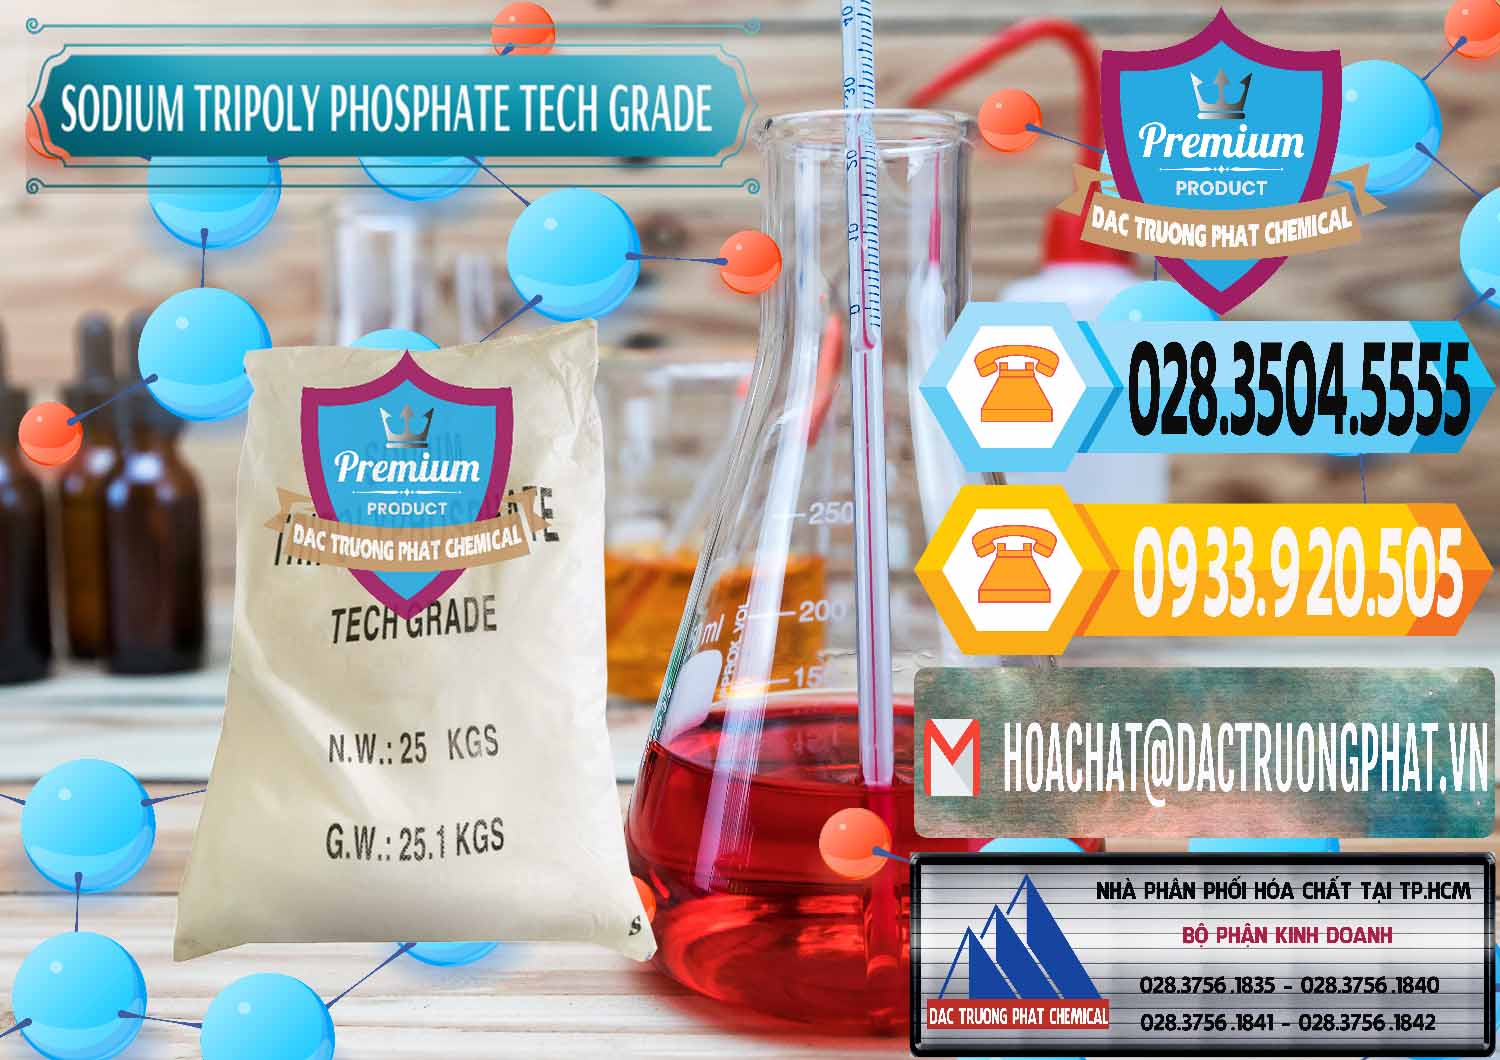 Cty cung ứng & bán Sodium Tripoly Phosphate - STPP Tech Grade Trung Quốc China - 0453 - Phân phối - kinh doanh hóa chất tại TP.HCM - hoachattayrua.net